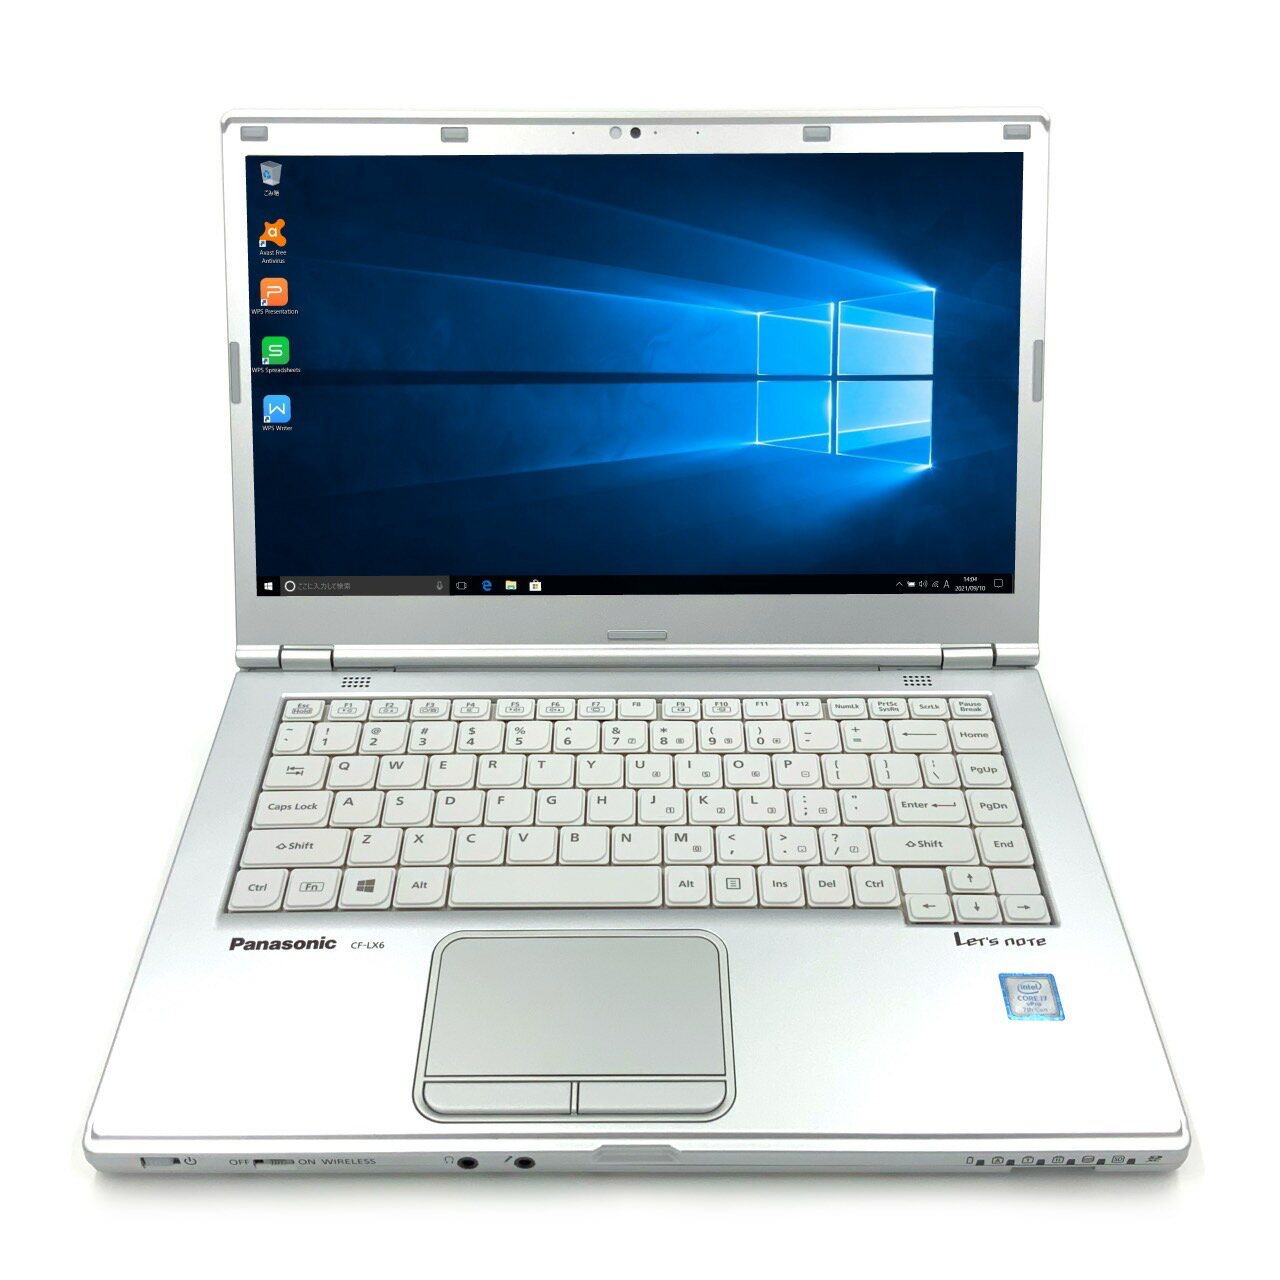  パナソニック Panasonic Let's note LX6 第7世代 Core i7 7600U/2.80GHz 16GB 新品SSD960GB M.2 スーパーマルチ Windows10 64bit WPSOffice 14.0インチ フルHD カメラ 無線LAN 中古パソコン ノートパソコン モバイルノート PC Notebook 